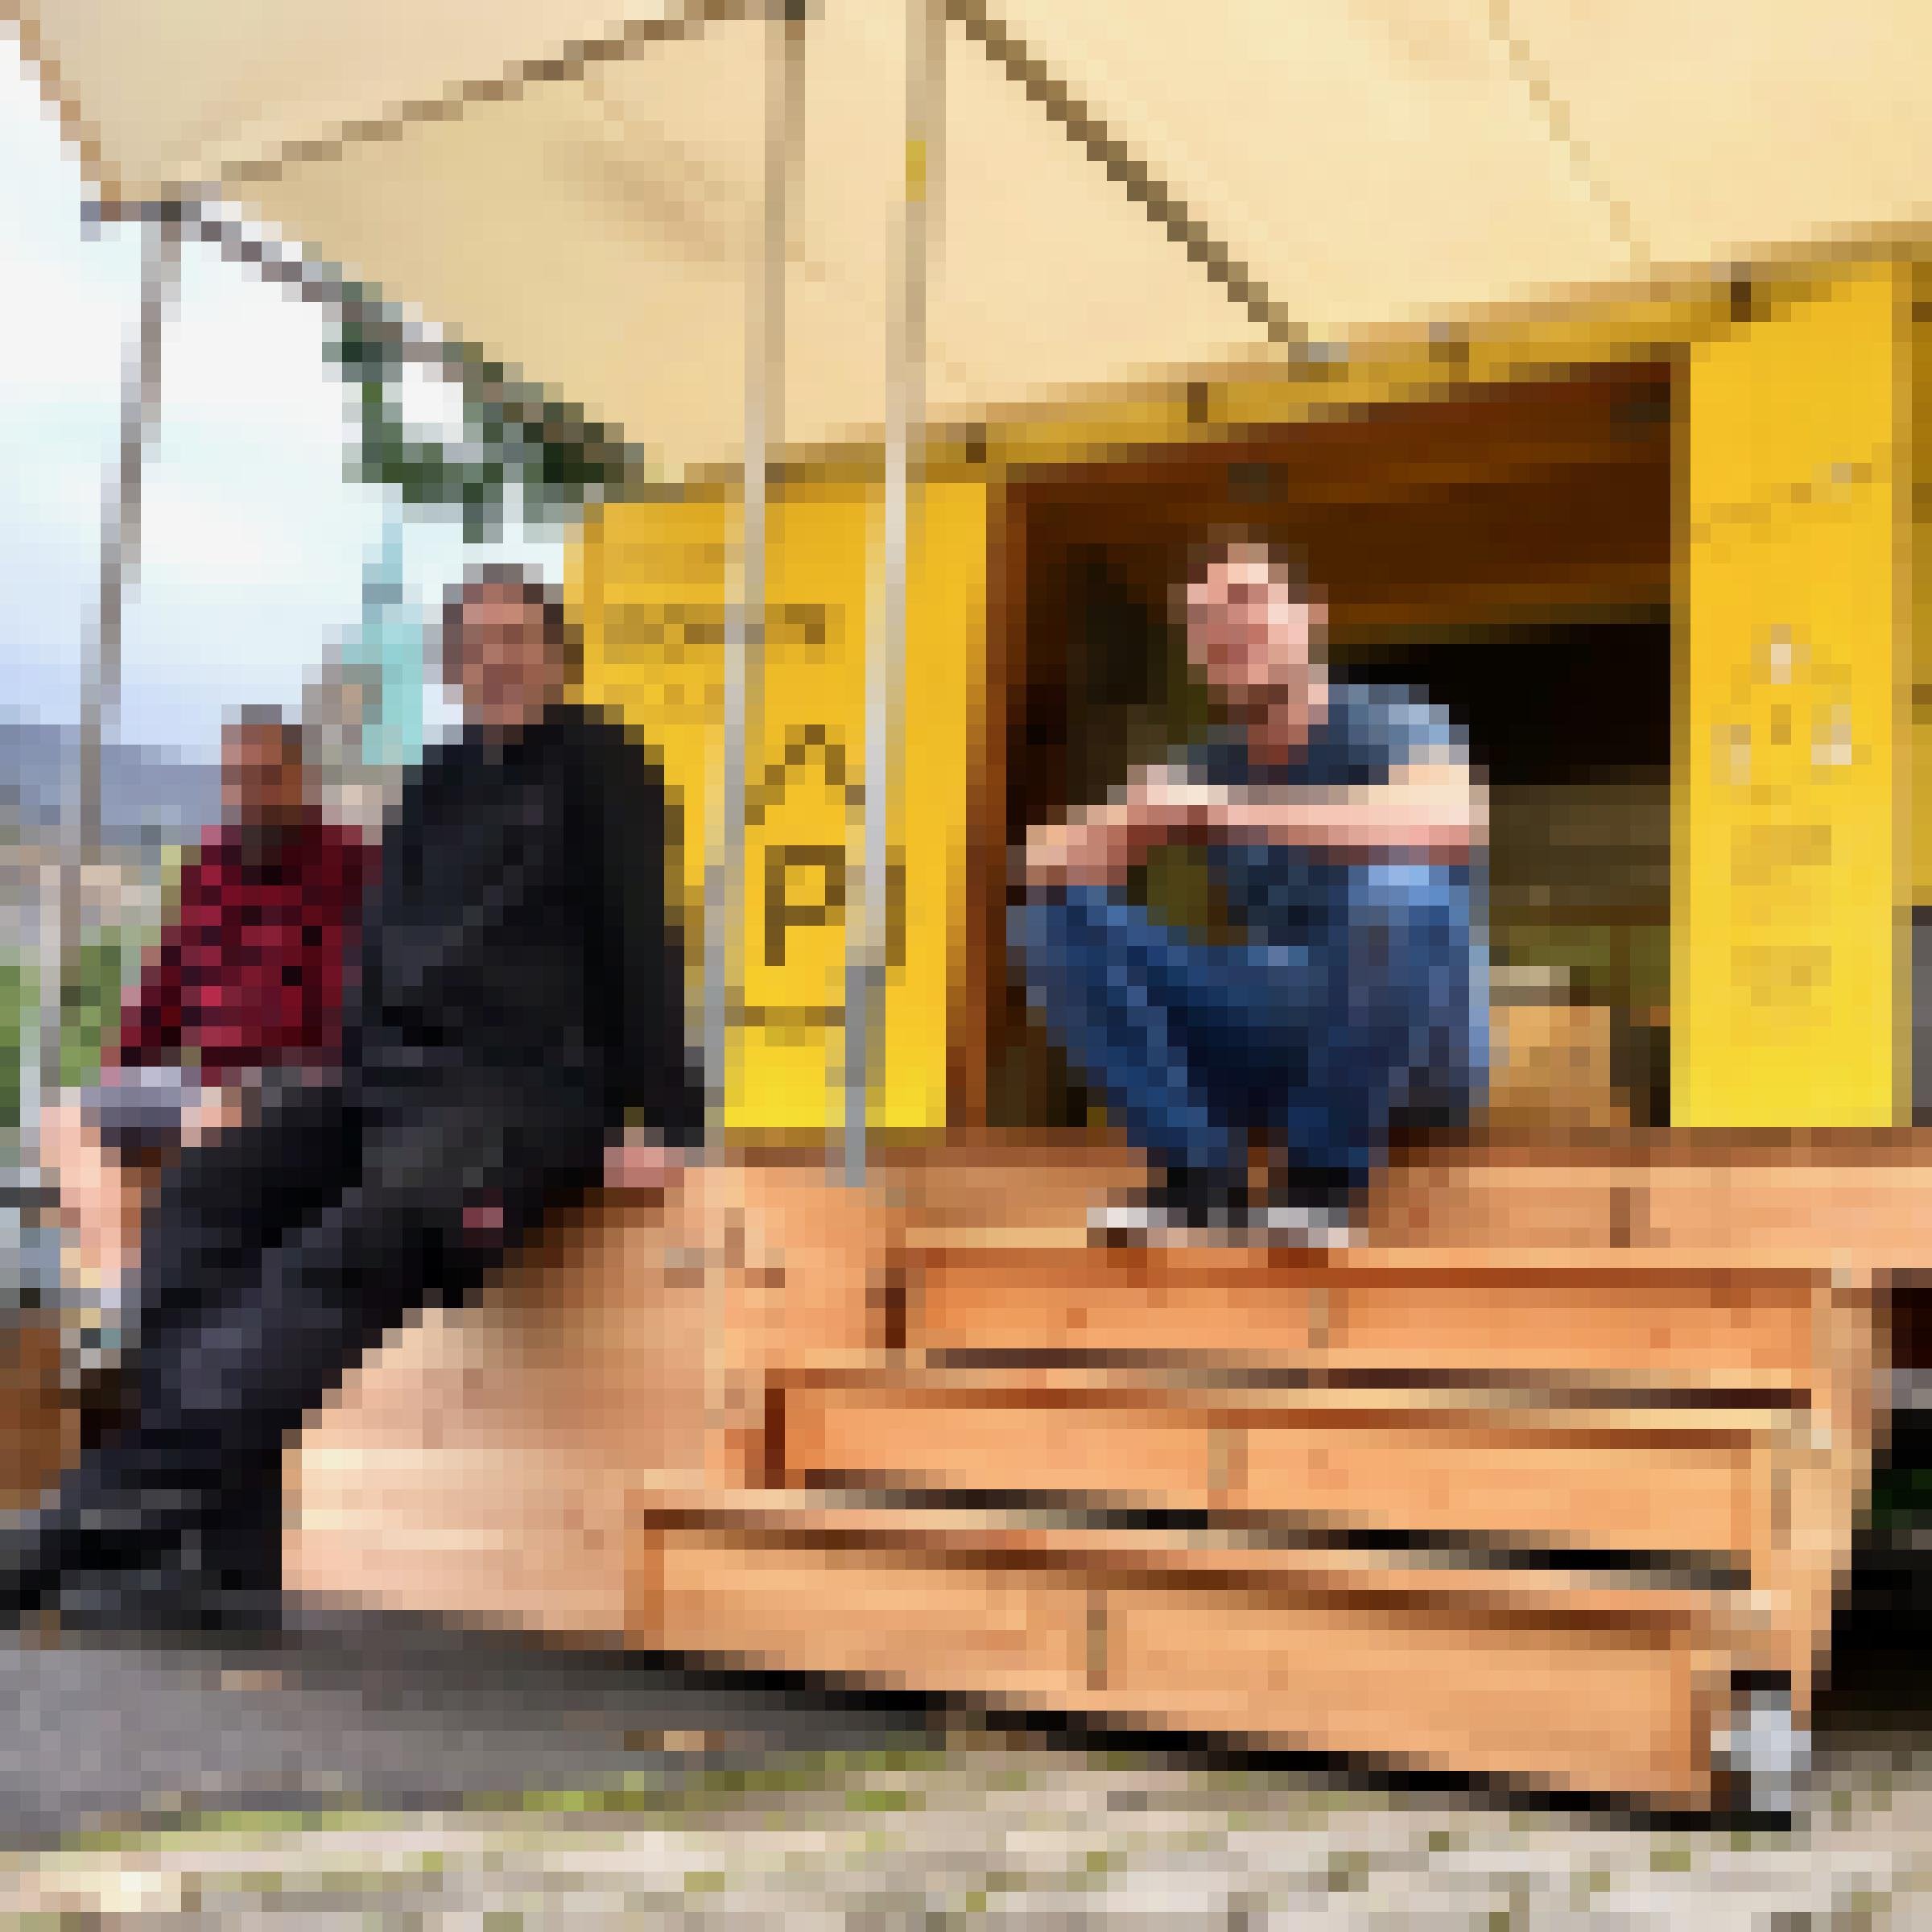 Zwei Männer, die vor einem gelben Kasten sitzen, der wie ein kleines Häuschen aussieht